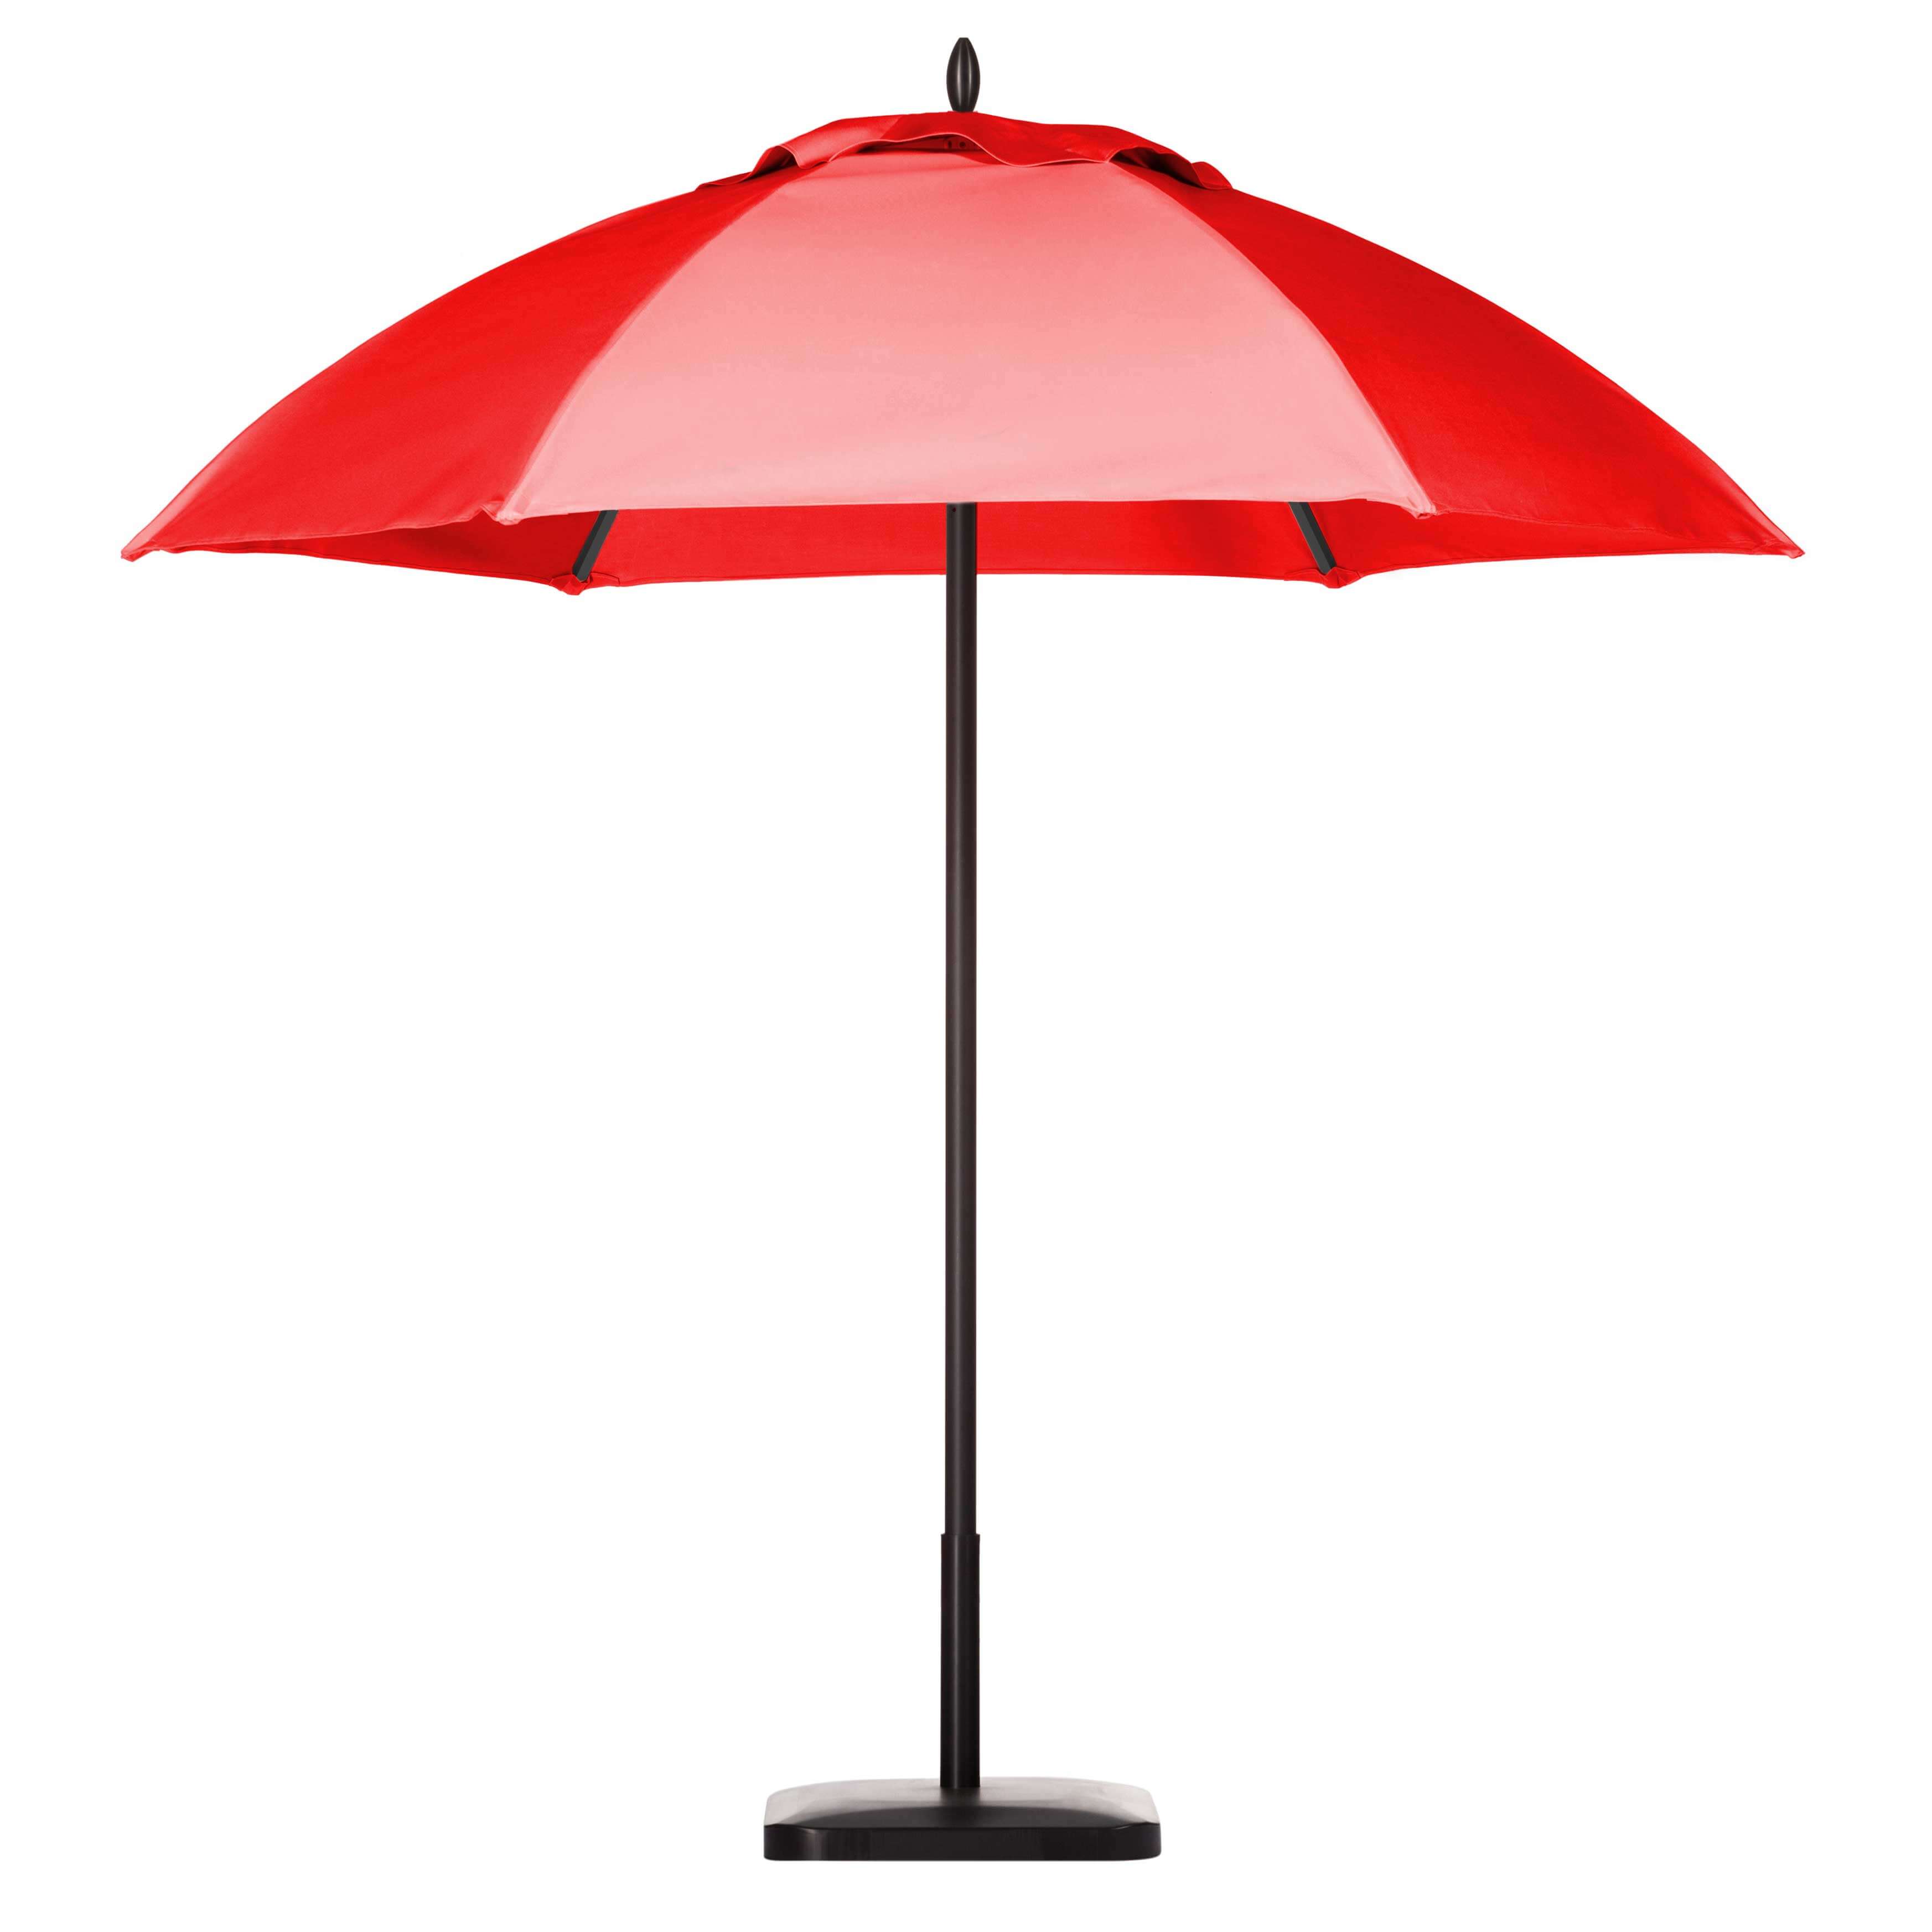 Tango Red Umbrella Image